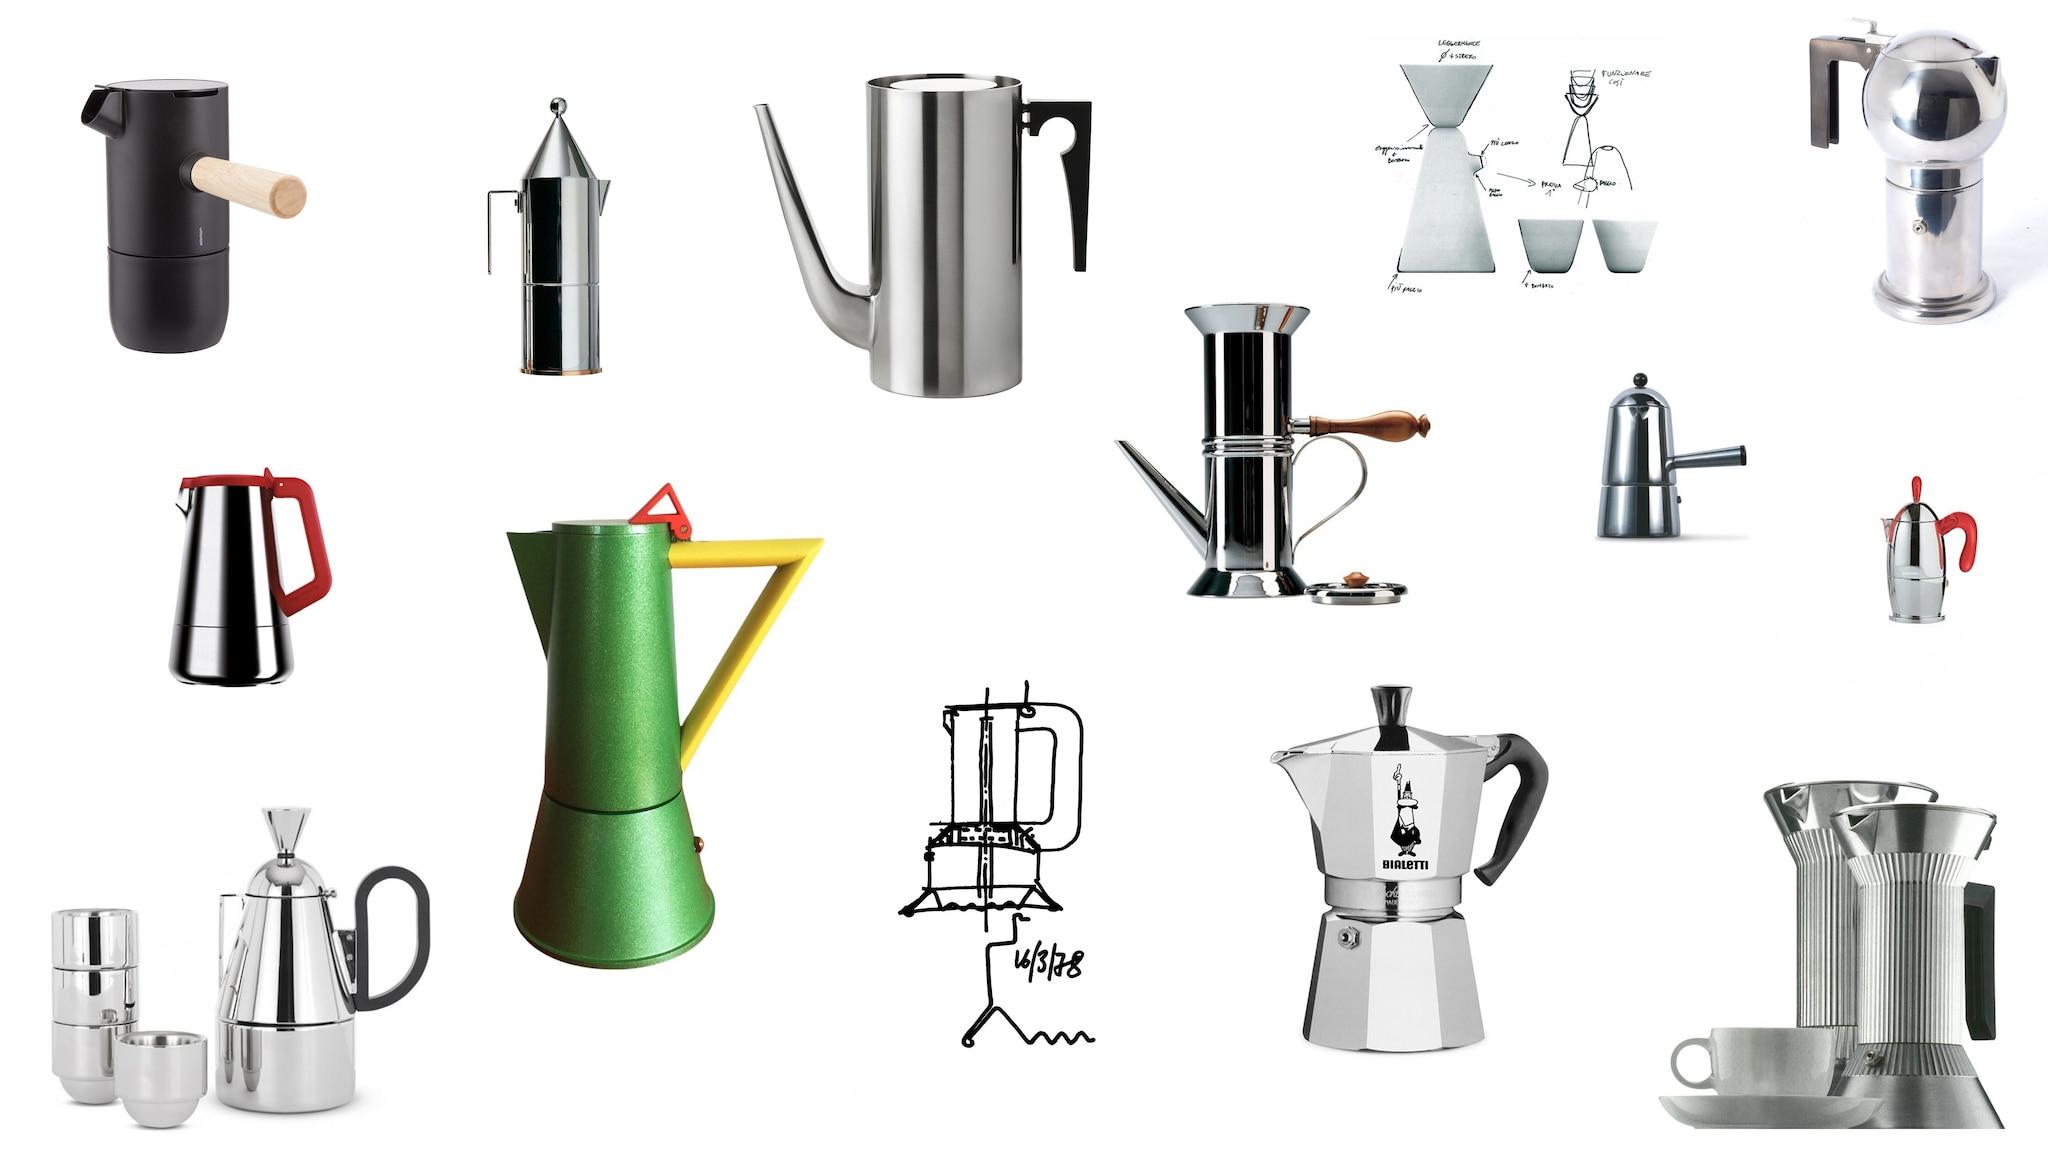 Espresso & drip coffee makers - Ilsa-italy